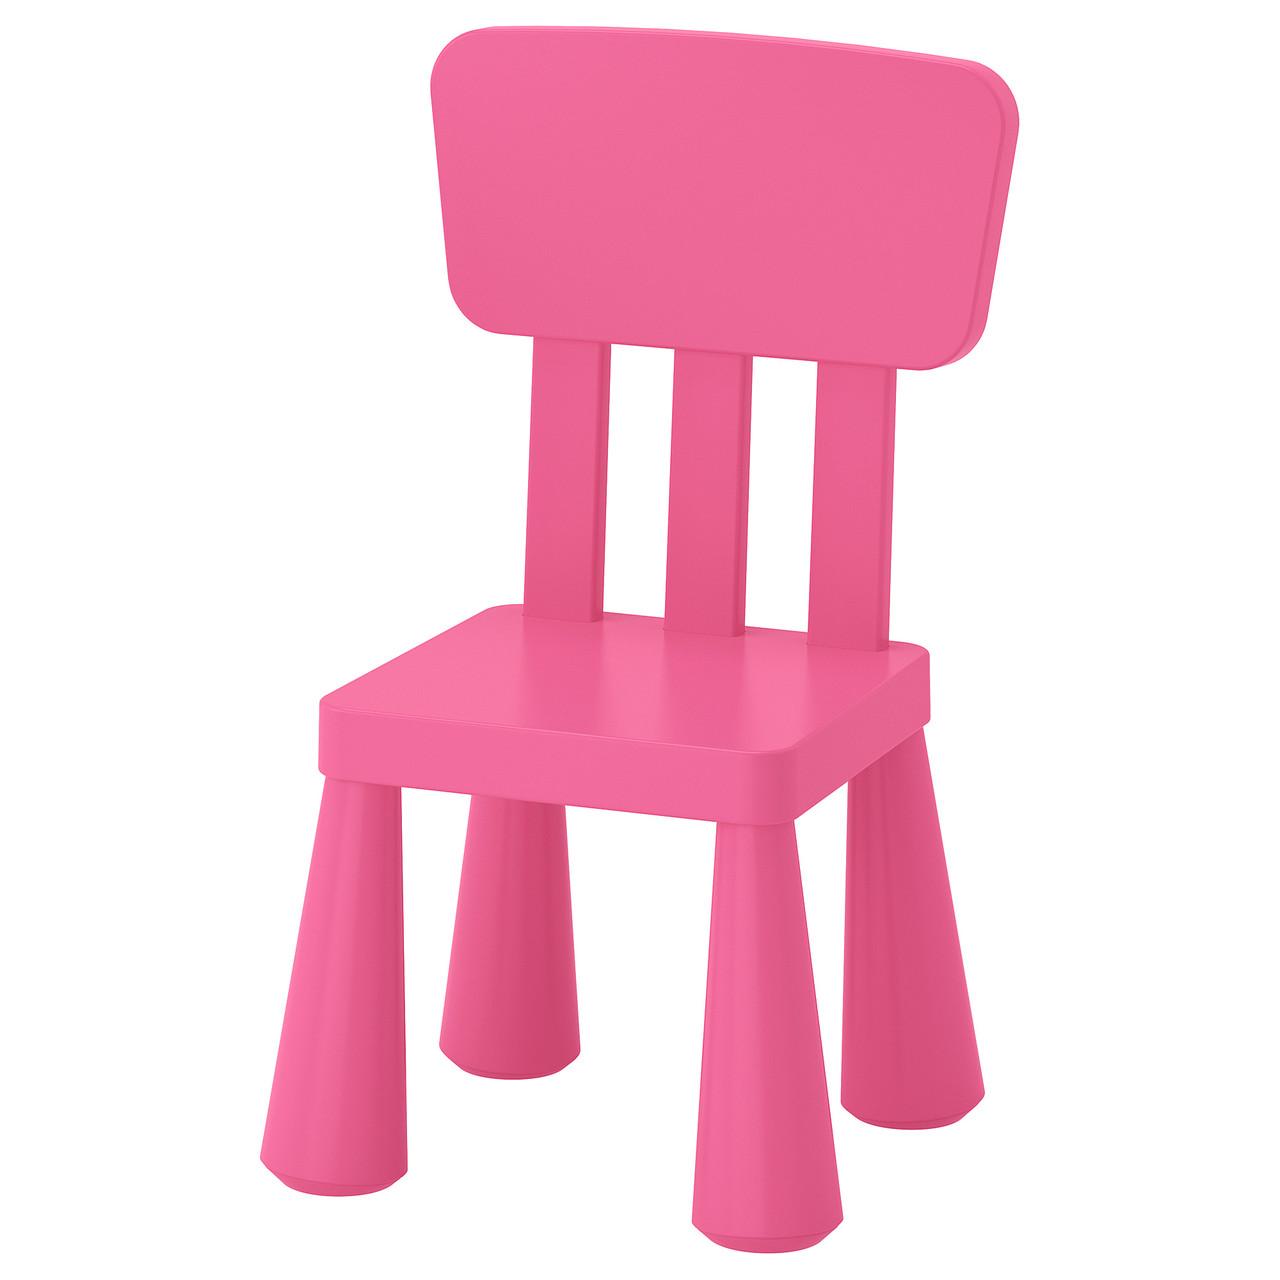 Стілець, стілець дитячий, стільчик, стільчик дитячий, рожевий, рожевий,  мамут, MAMMUT, Ikea, 803.823.21, ціна 650 грн - Prom.ua (ID#1141325191)